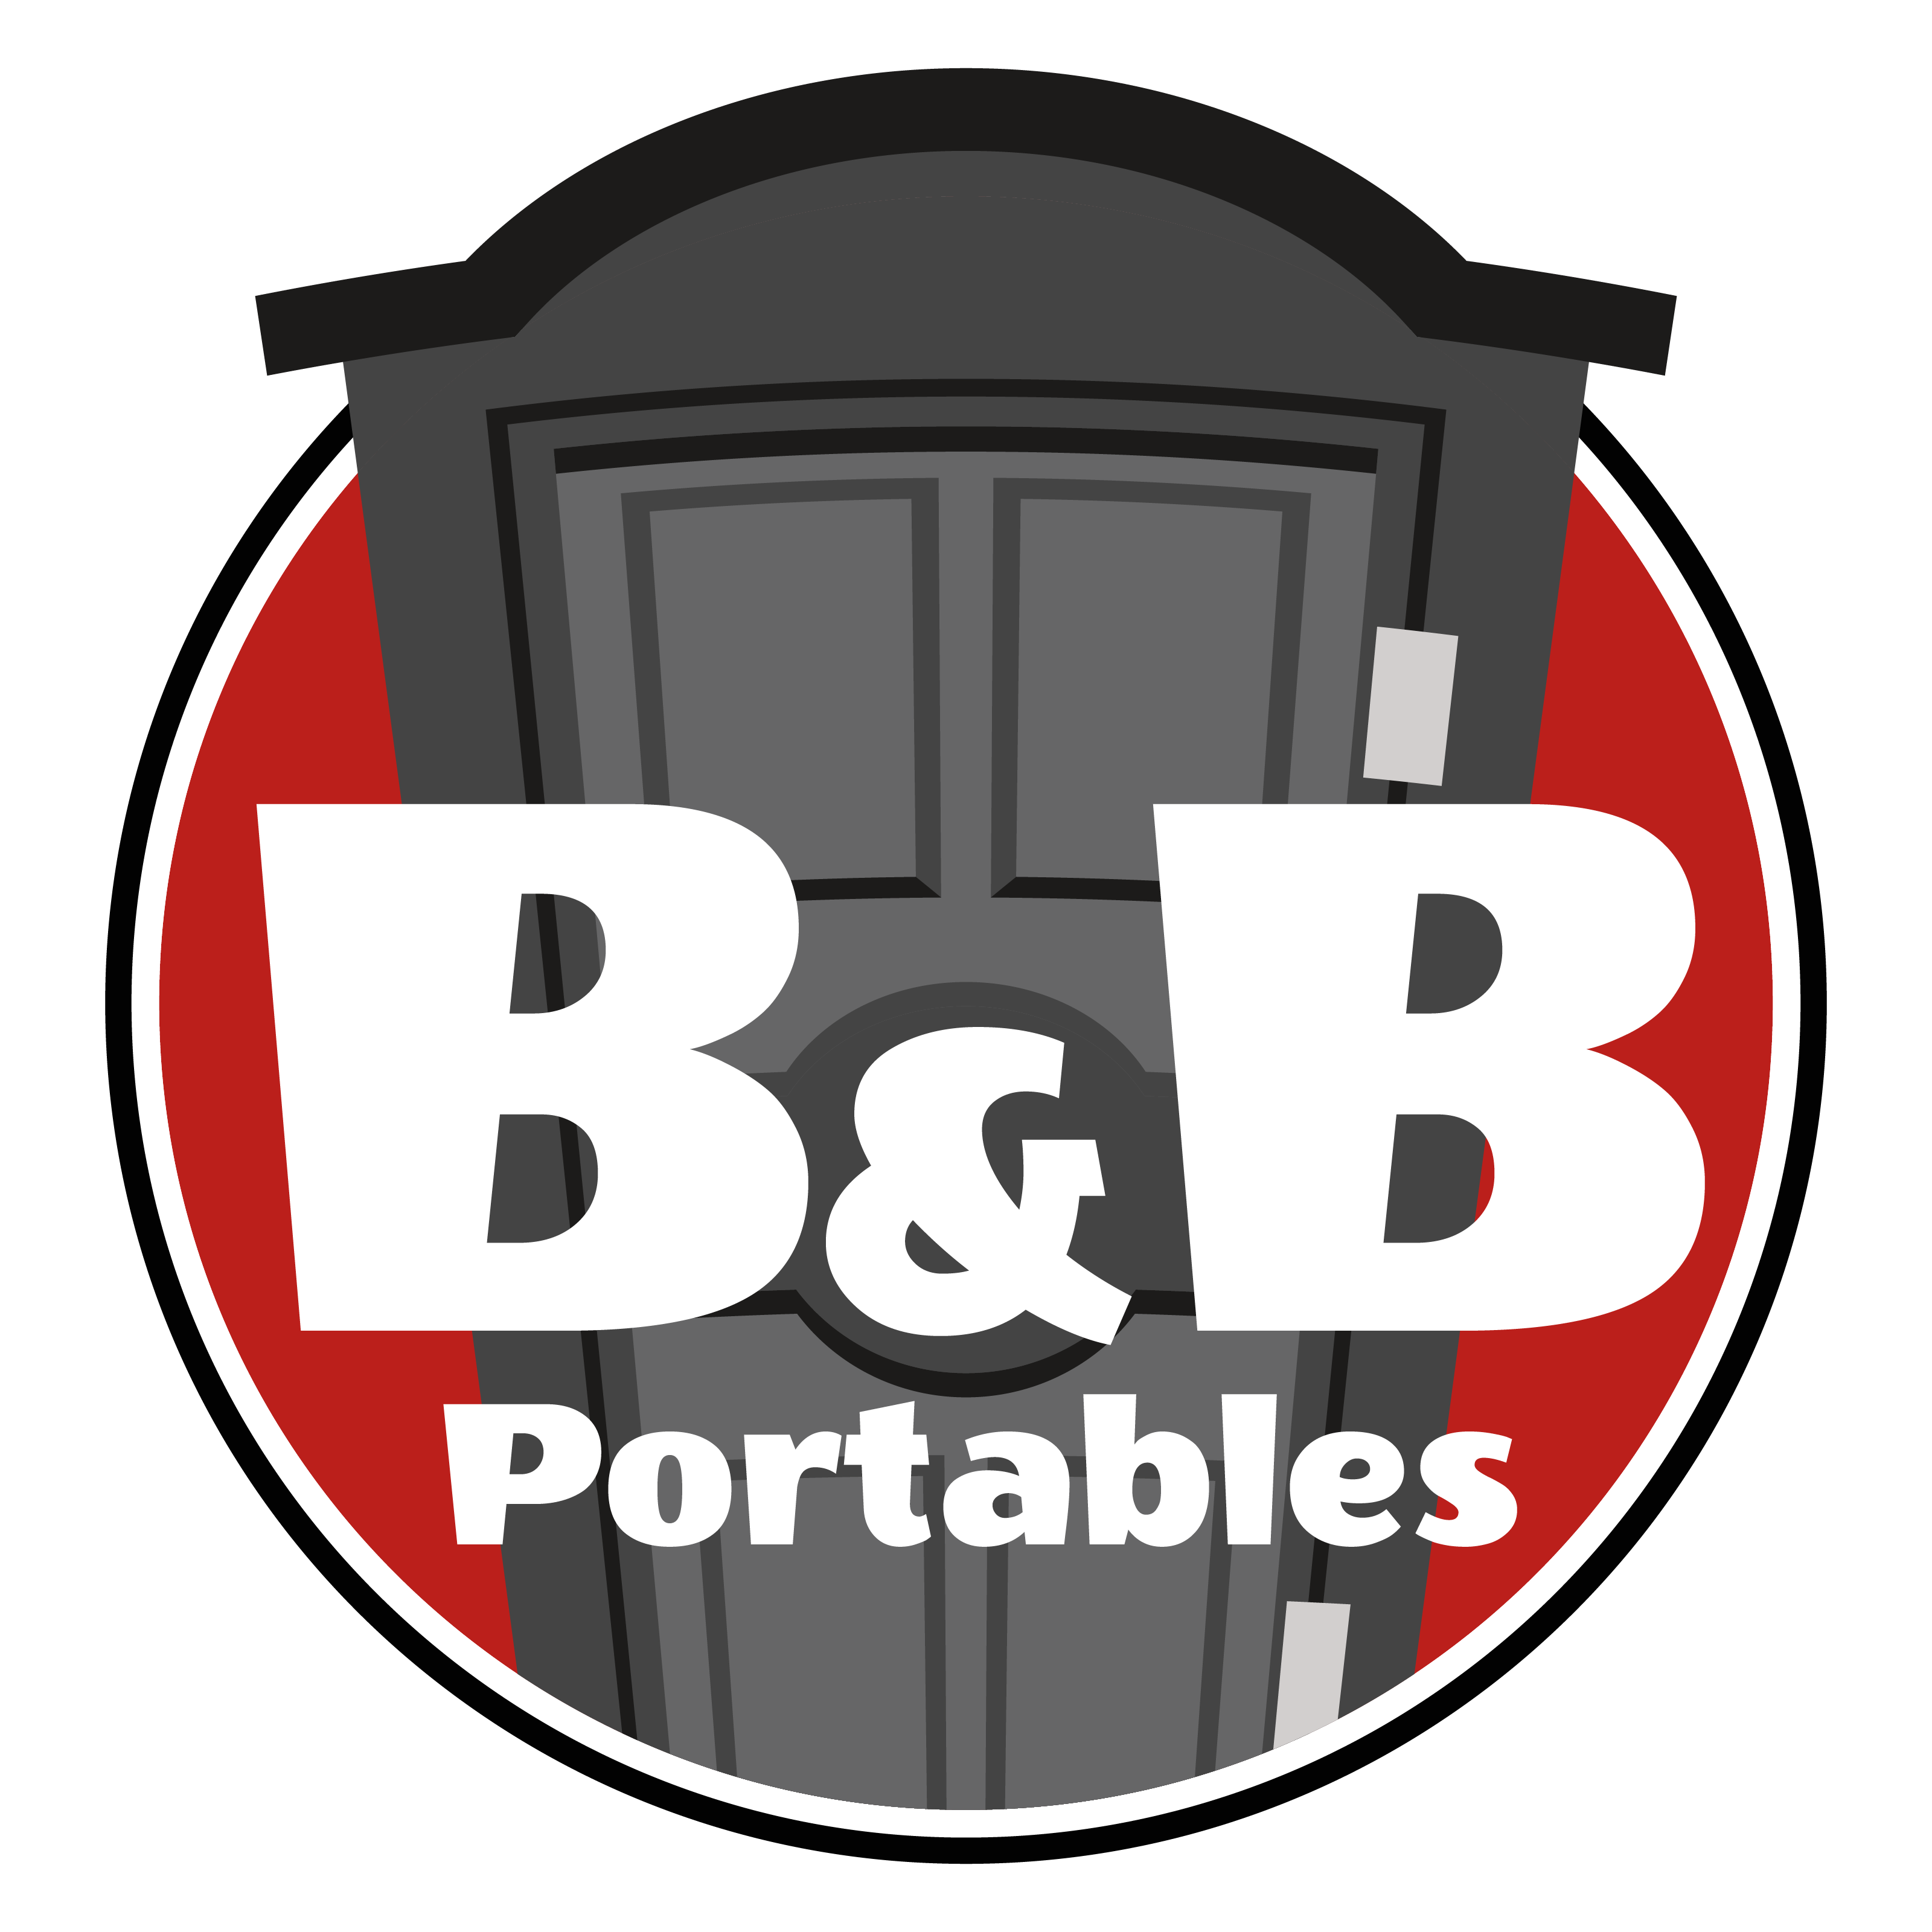 B & B Portables